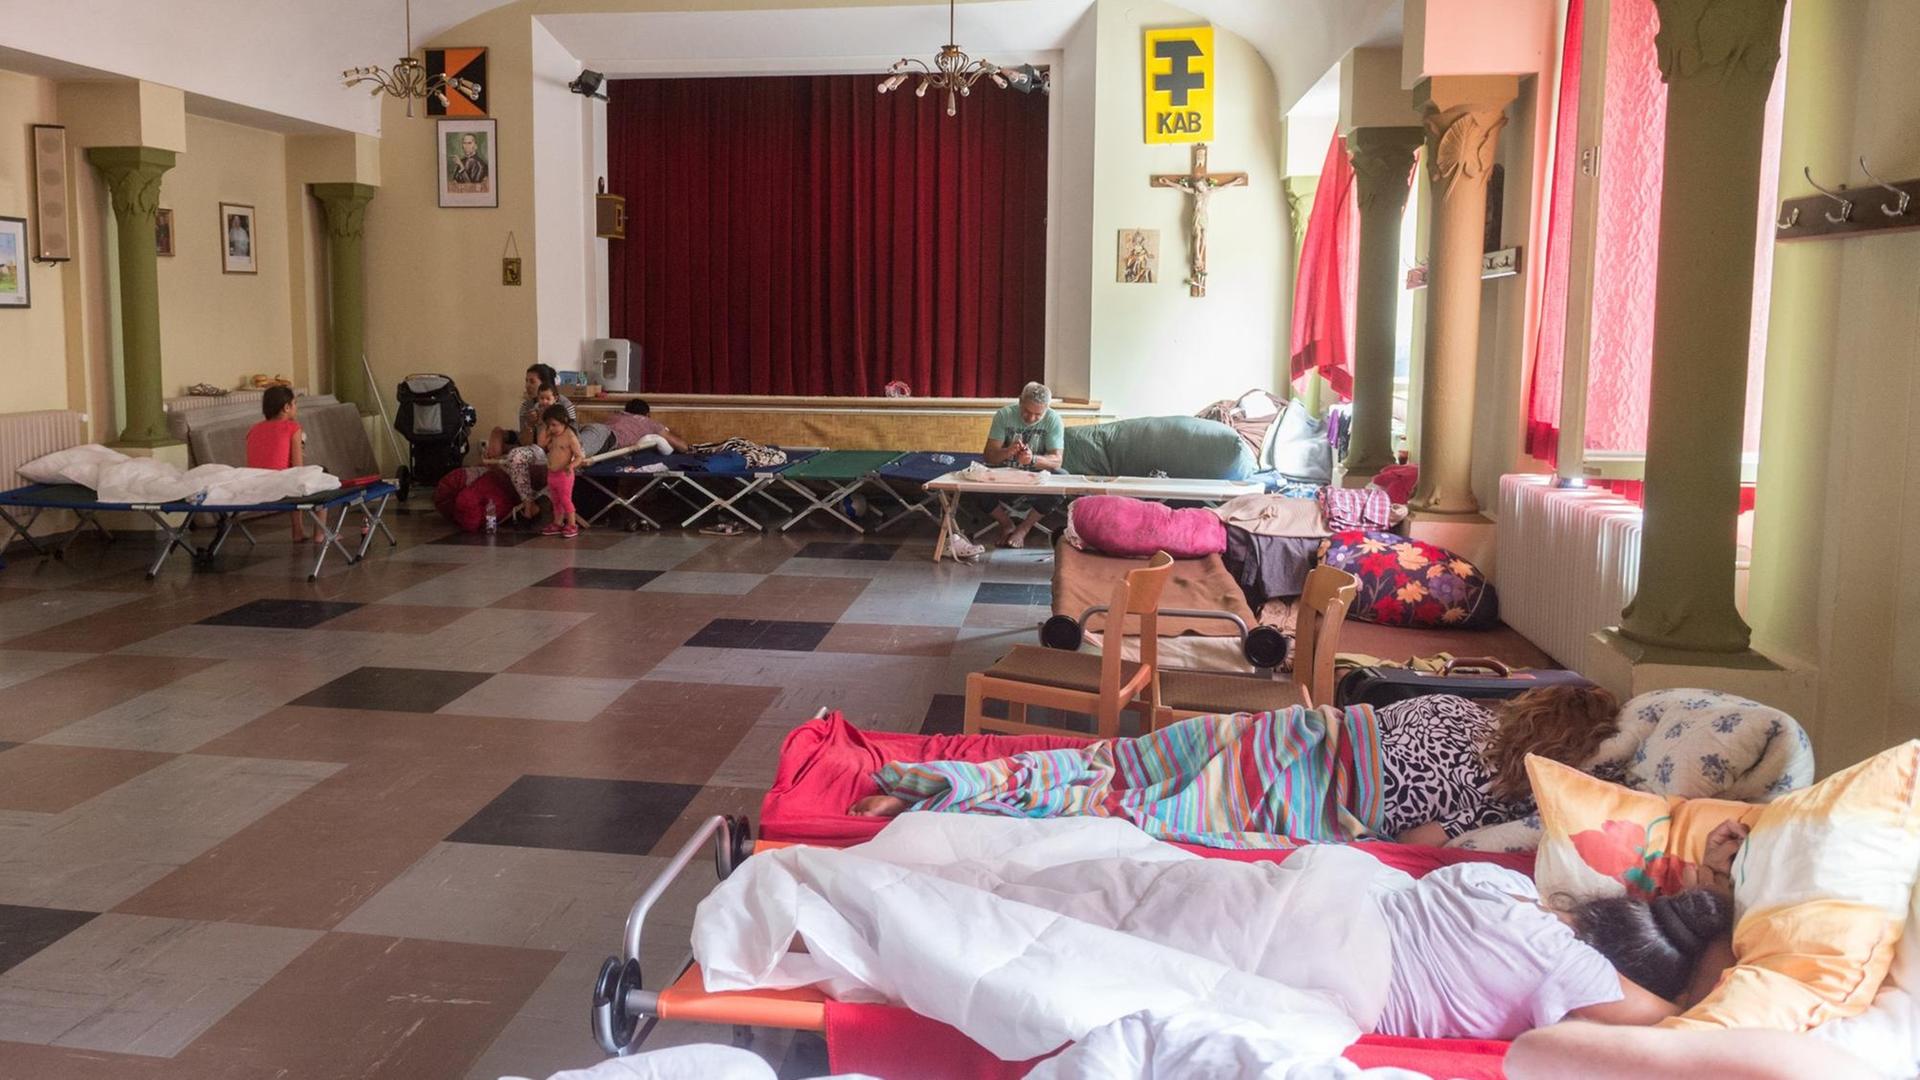 Betten stehen in einem großen Raum eines Pfarrheims in Regensburg.